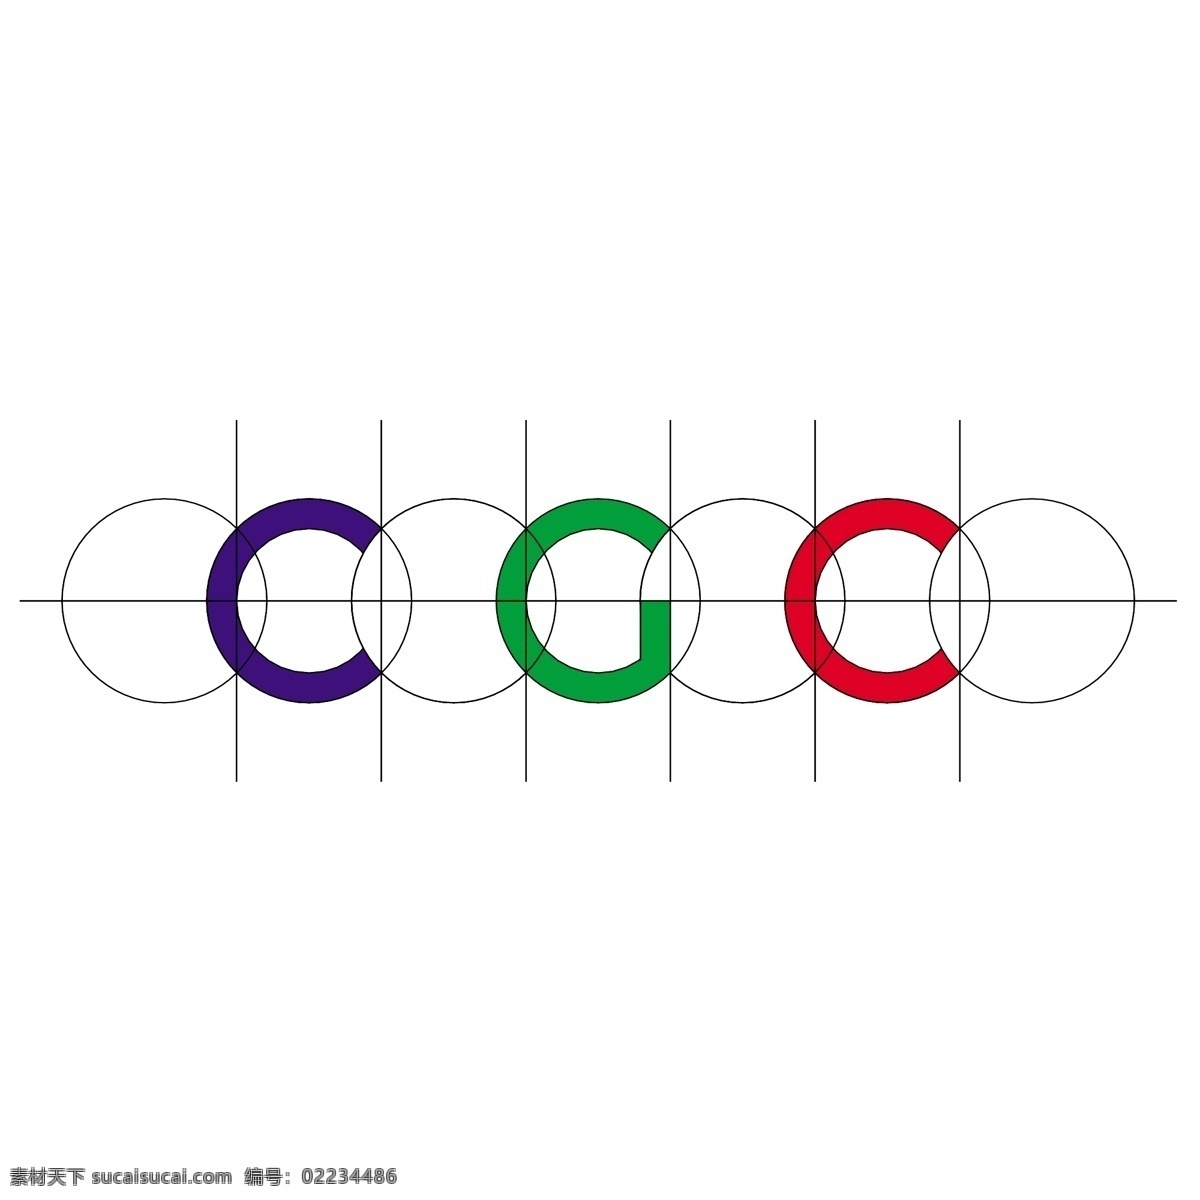 毛细管 气相 色谱 法 cgc cgc标志 标识为免费 psd源文件 logo设计